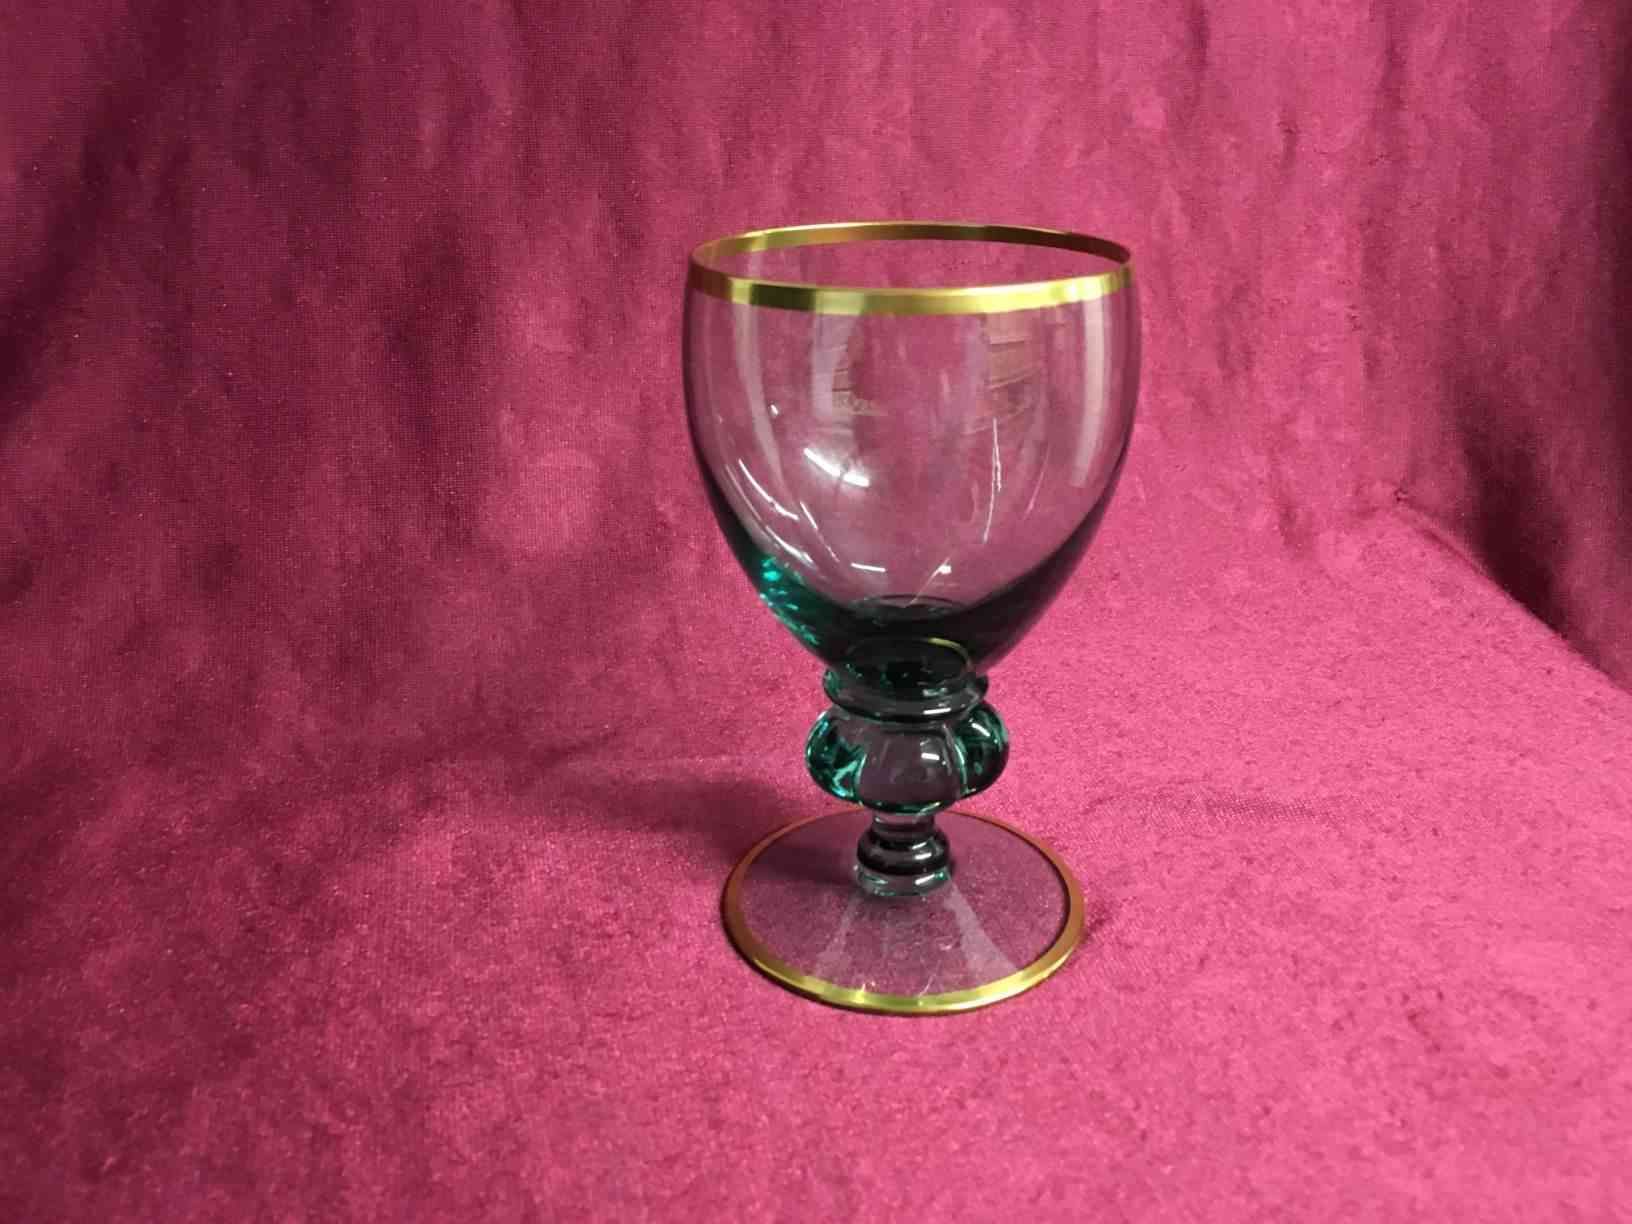 Holmegaard  Gisselfeld glas  - Hvidvinsglas blågrønt glas. Pris: 150,- Kr. pr. stk.